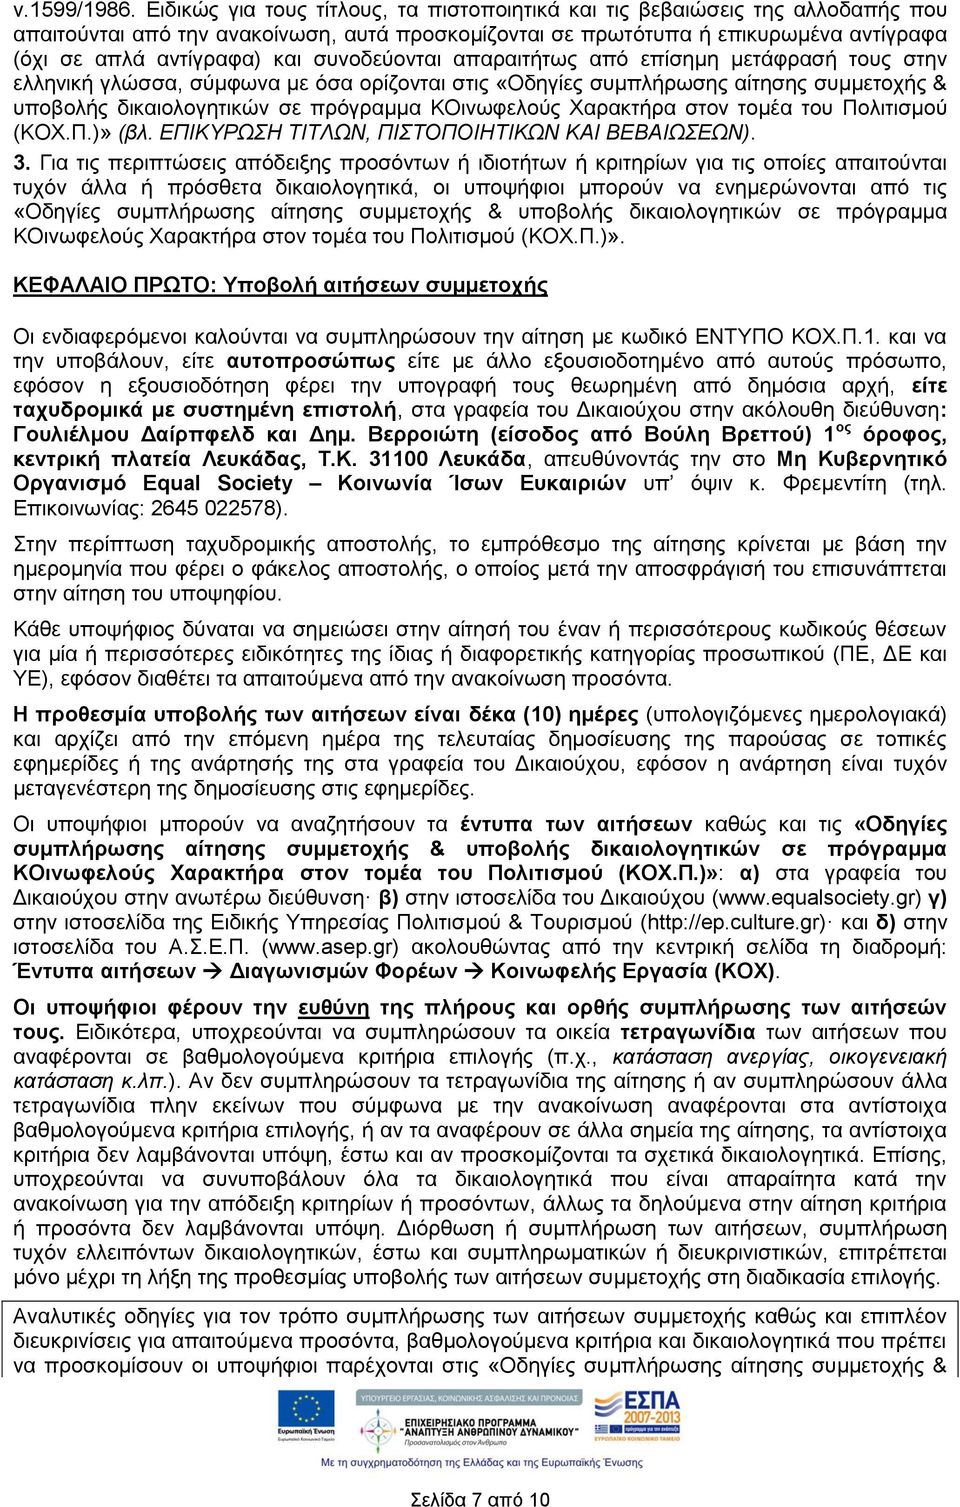 συνοδεύονται απαραιτήτως από επίσημη μετάφρασή τους στην ελληνική γλώσσα, σύμφωνα με όσα ορίζονται στις «Οδηγίες συμπλήρωσης αίτησης συμμετοχής & υποβολής δικαιολογητικών σε πρόγραμμα ΚΟινωφελούς